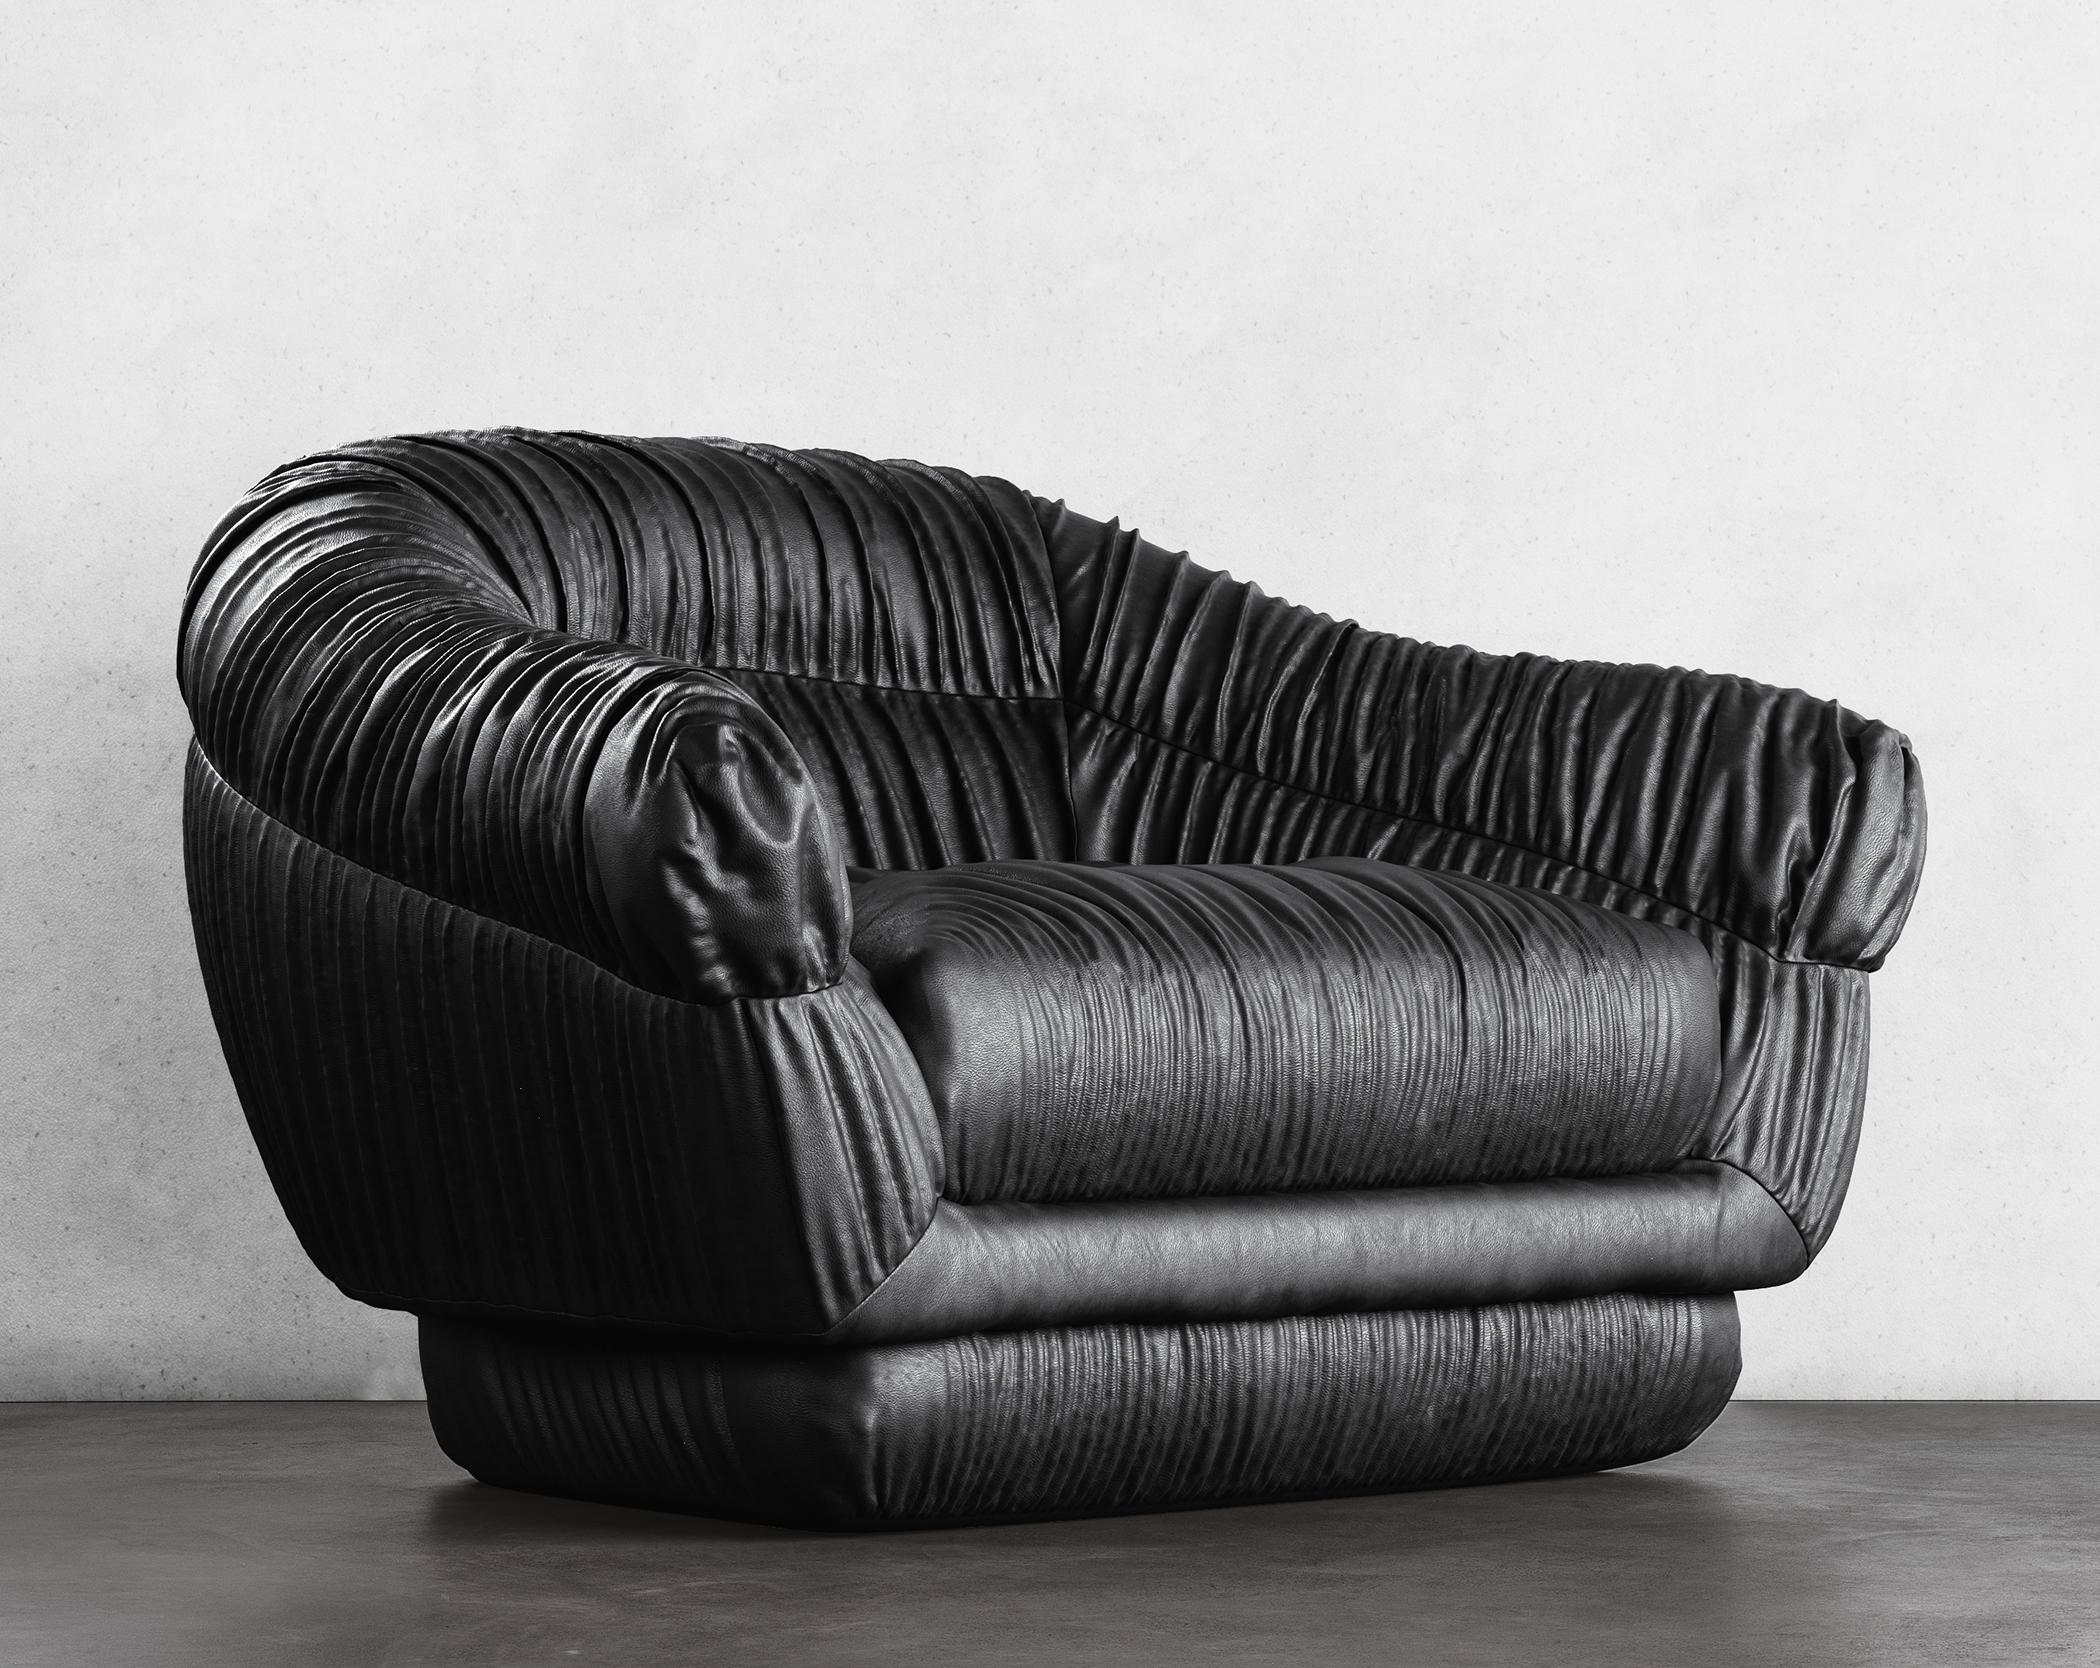 SWERVE LOUNGE CHAIR - Design Modern en Faux Lambskin Noir

Le fauteuil de salon Swerve, avec son revêtement en fausse peau d'agneau noir et son design moderne en ruchés, est un ajout élégant et confortable à tout espace de vie. La chaise présente un